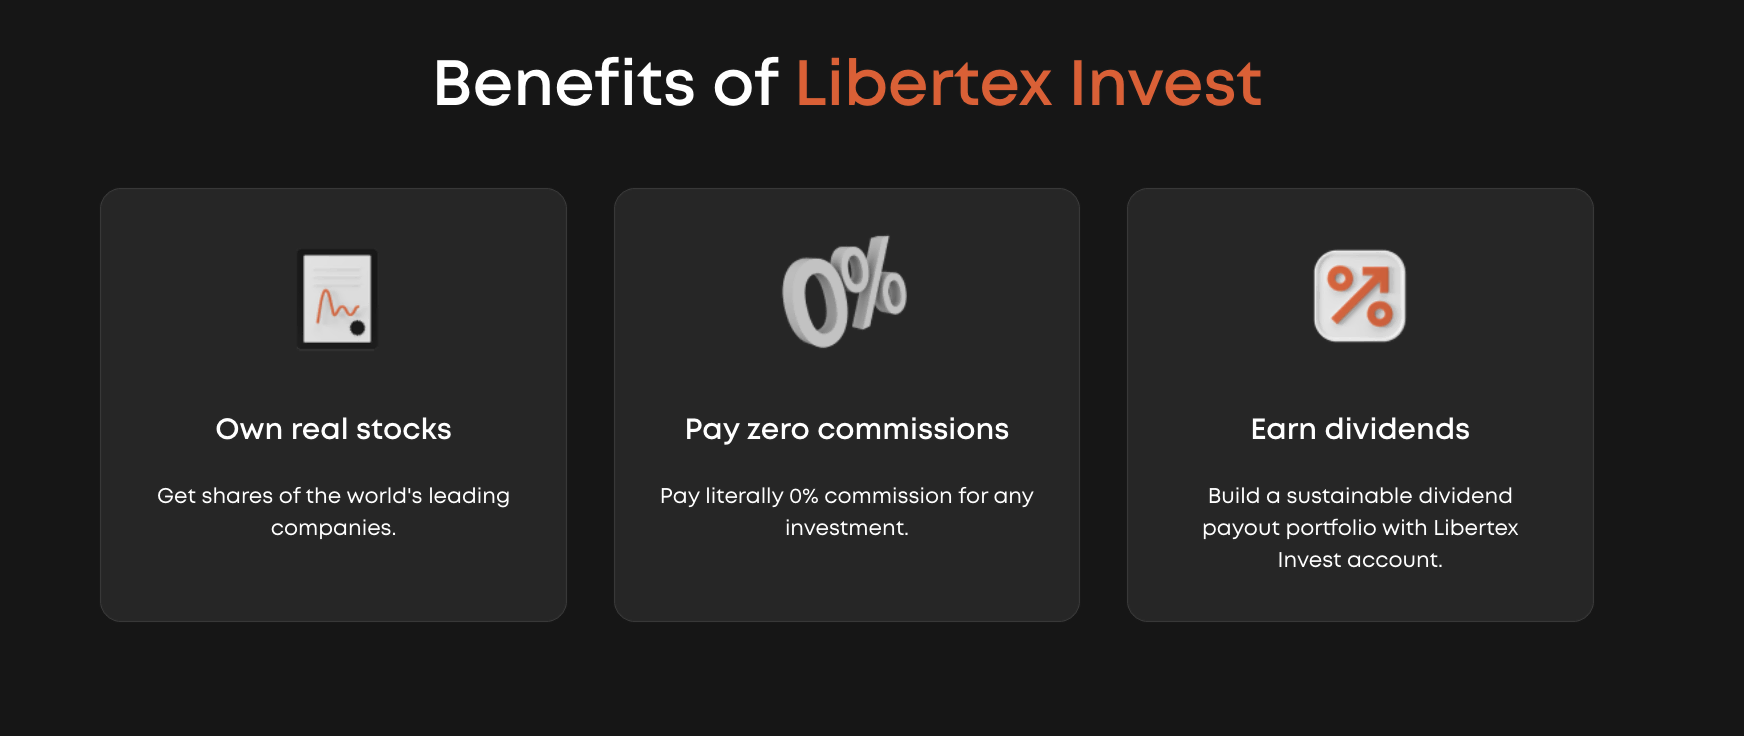 LibertexInvestの利点